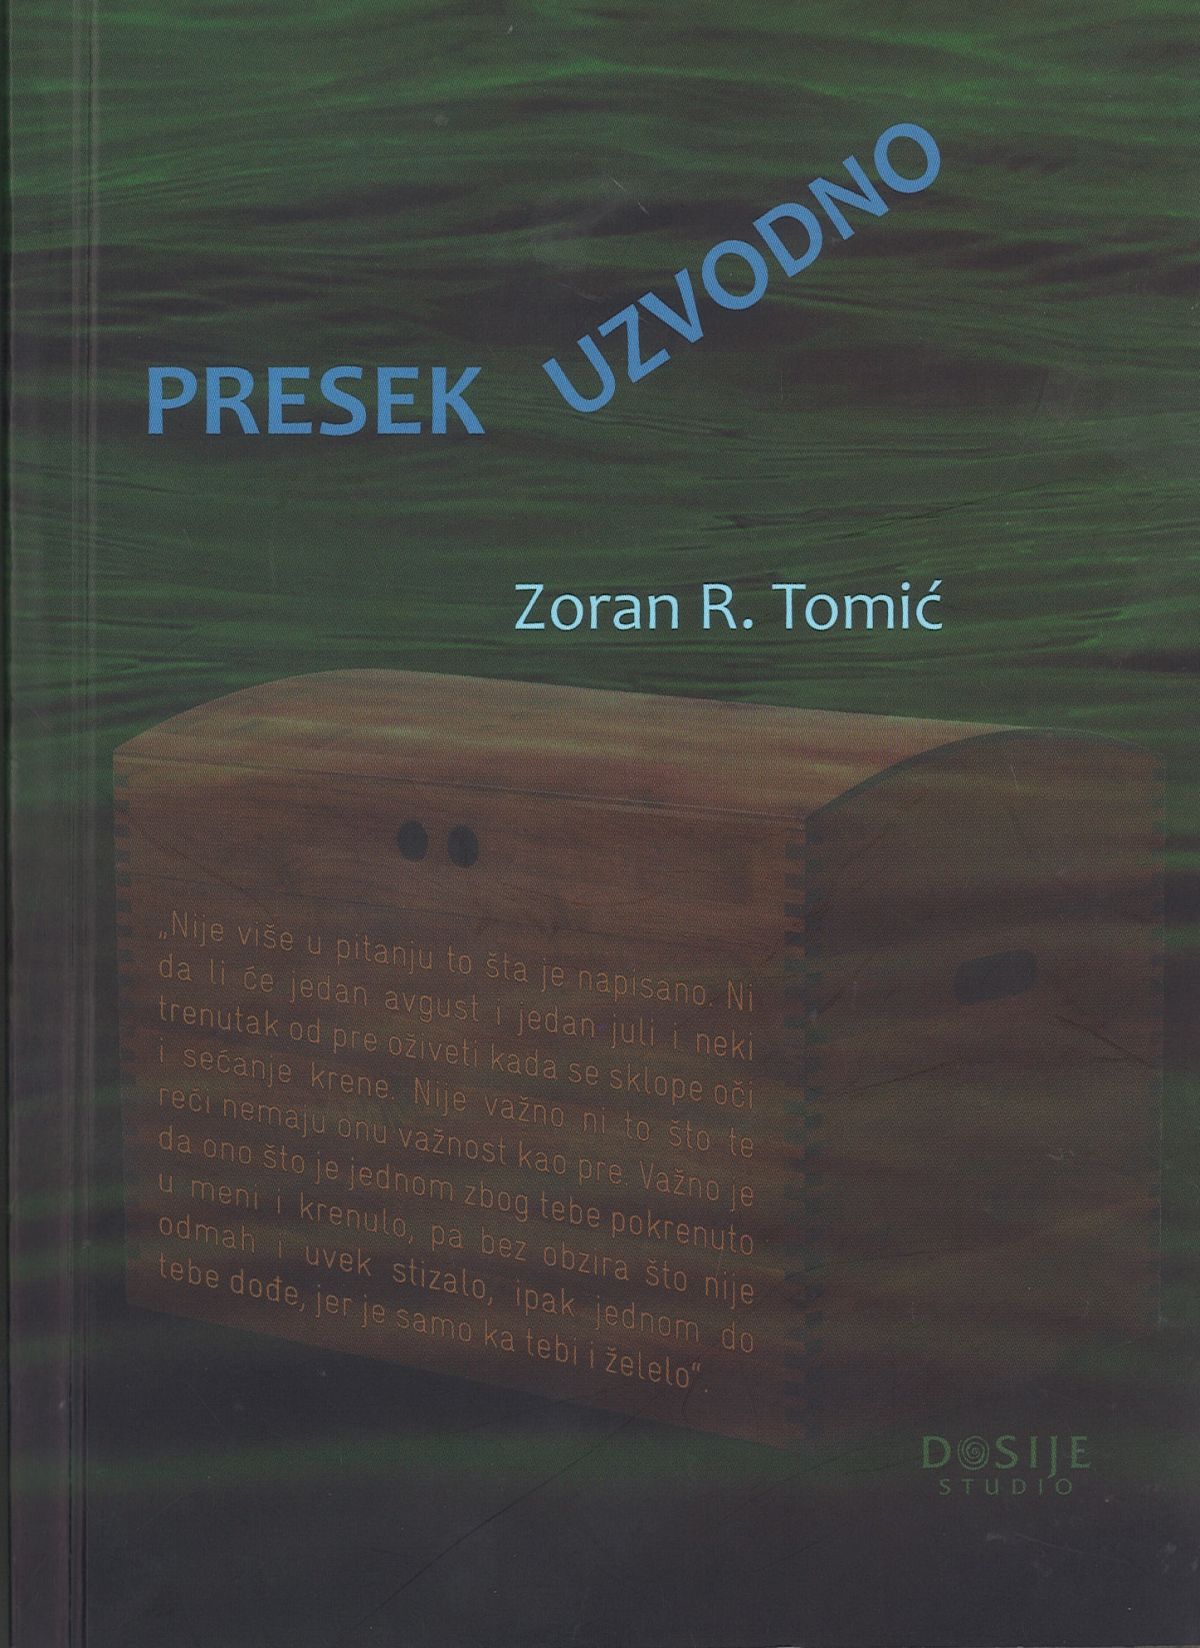 Промоција књиге "Пресек узводно" проф. др Зорана Томића